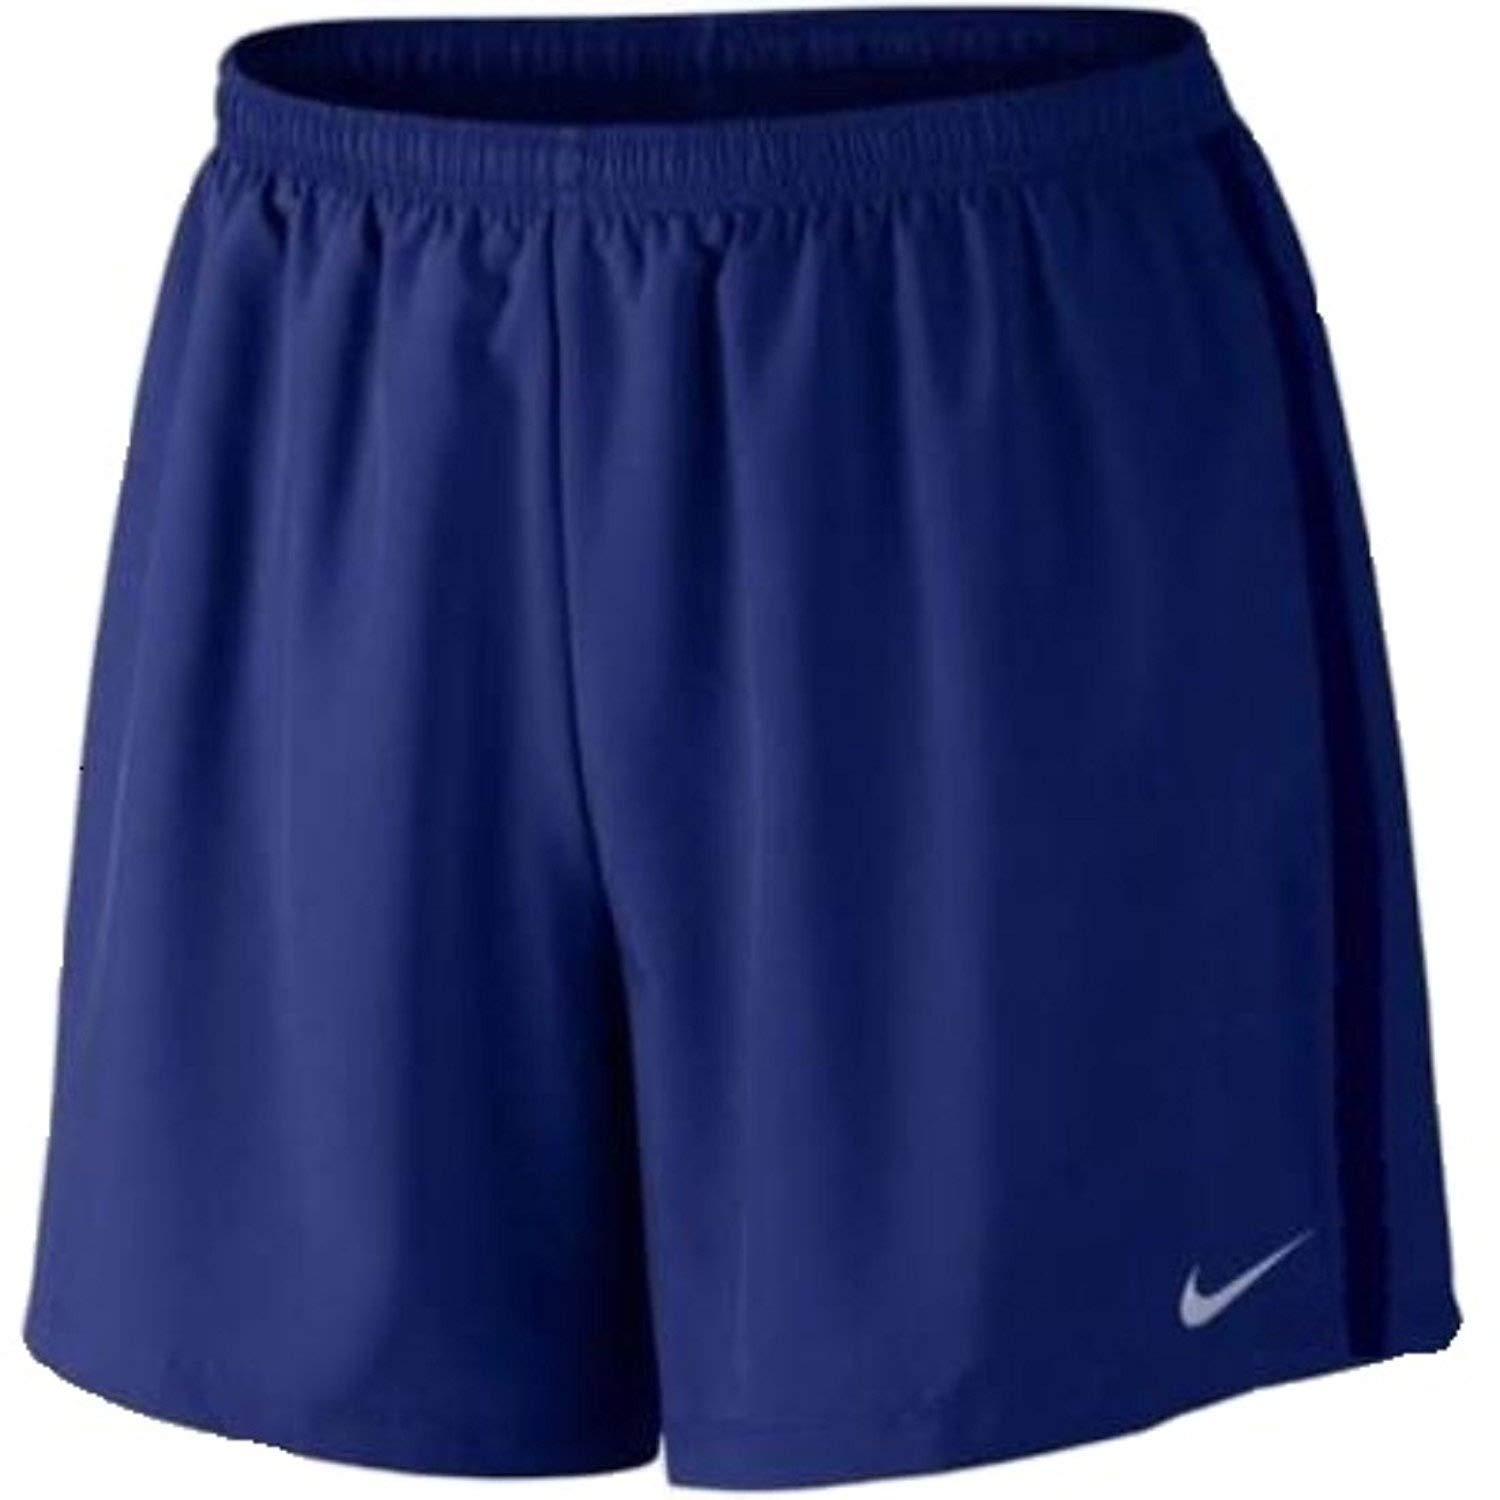 Nike Men's 7 Challenger Short blue